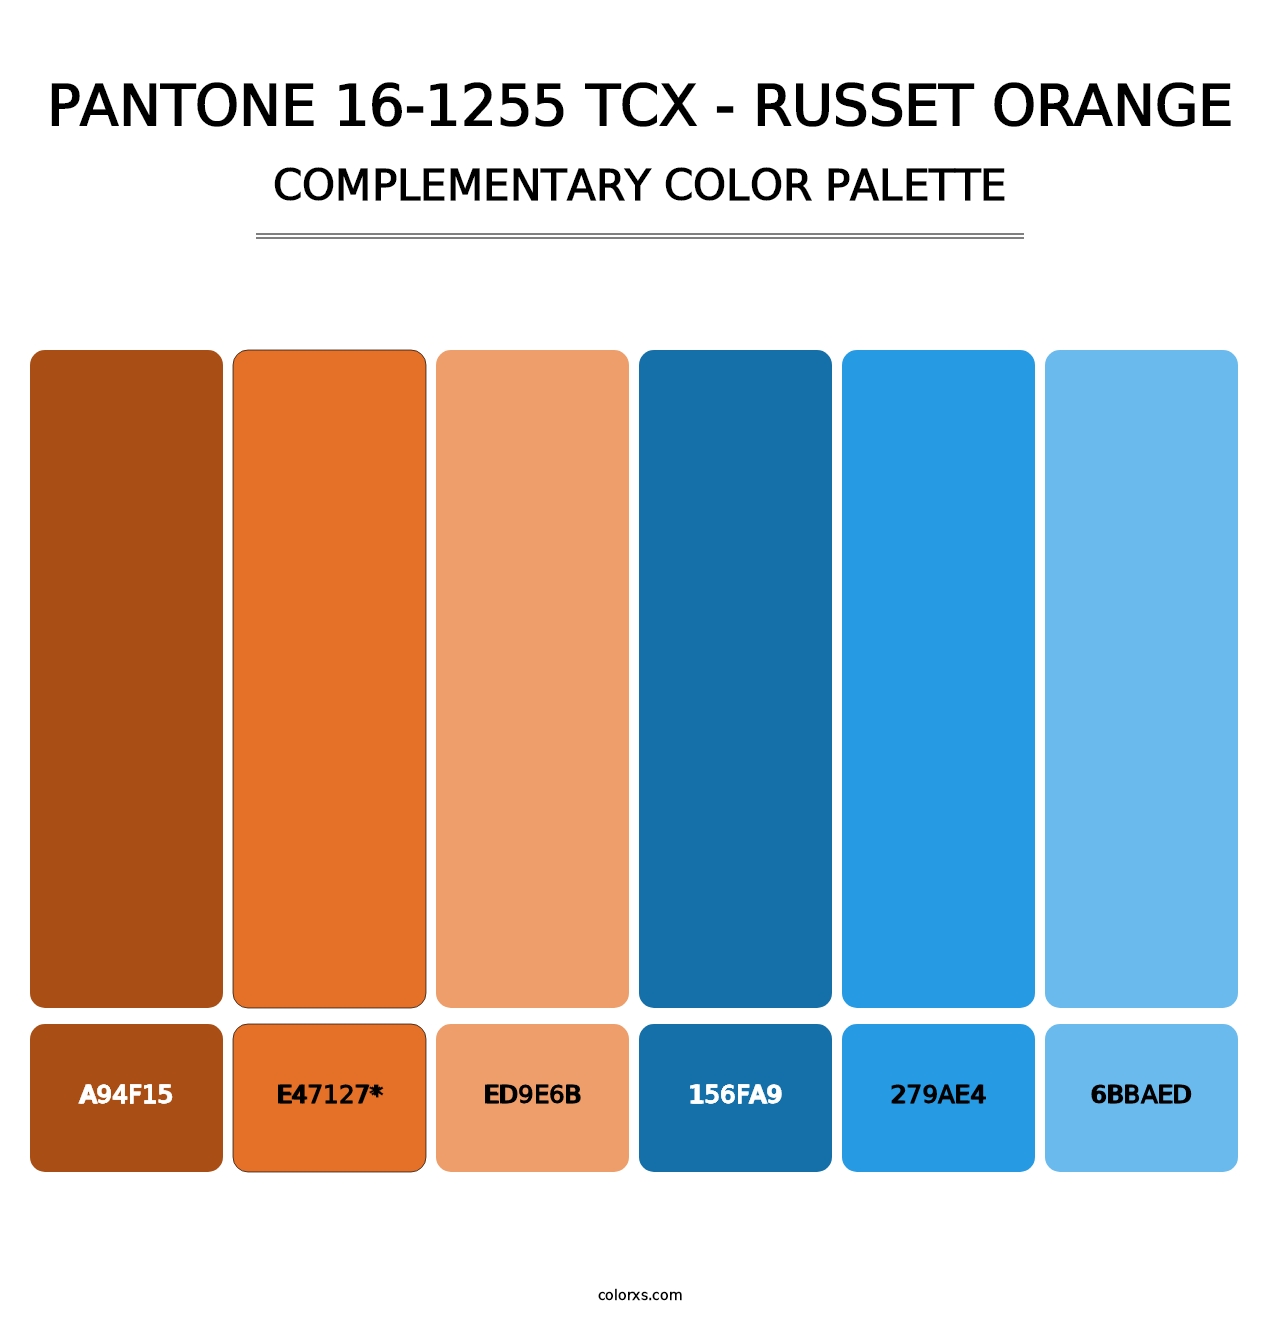 PANTONE 16-1255 TCX - Russet Orange - Complementary Color Palette